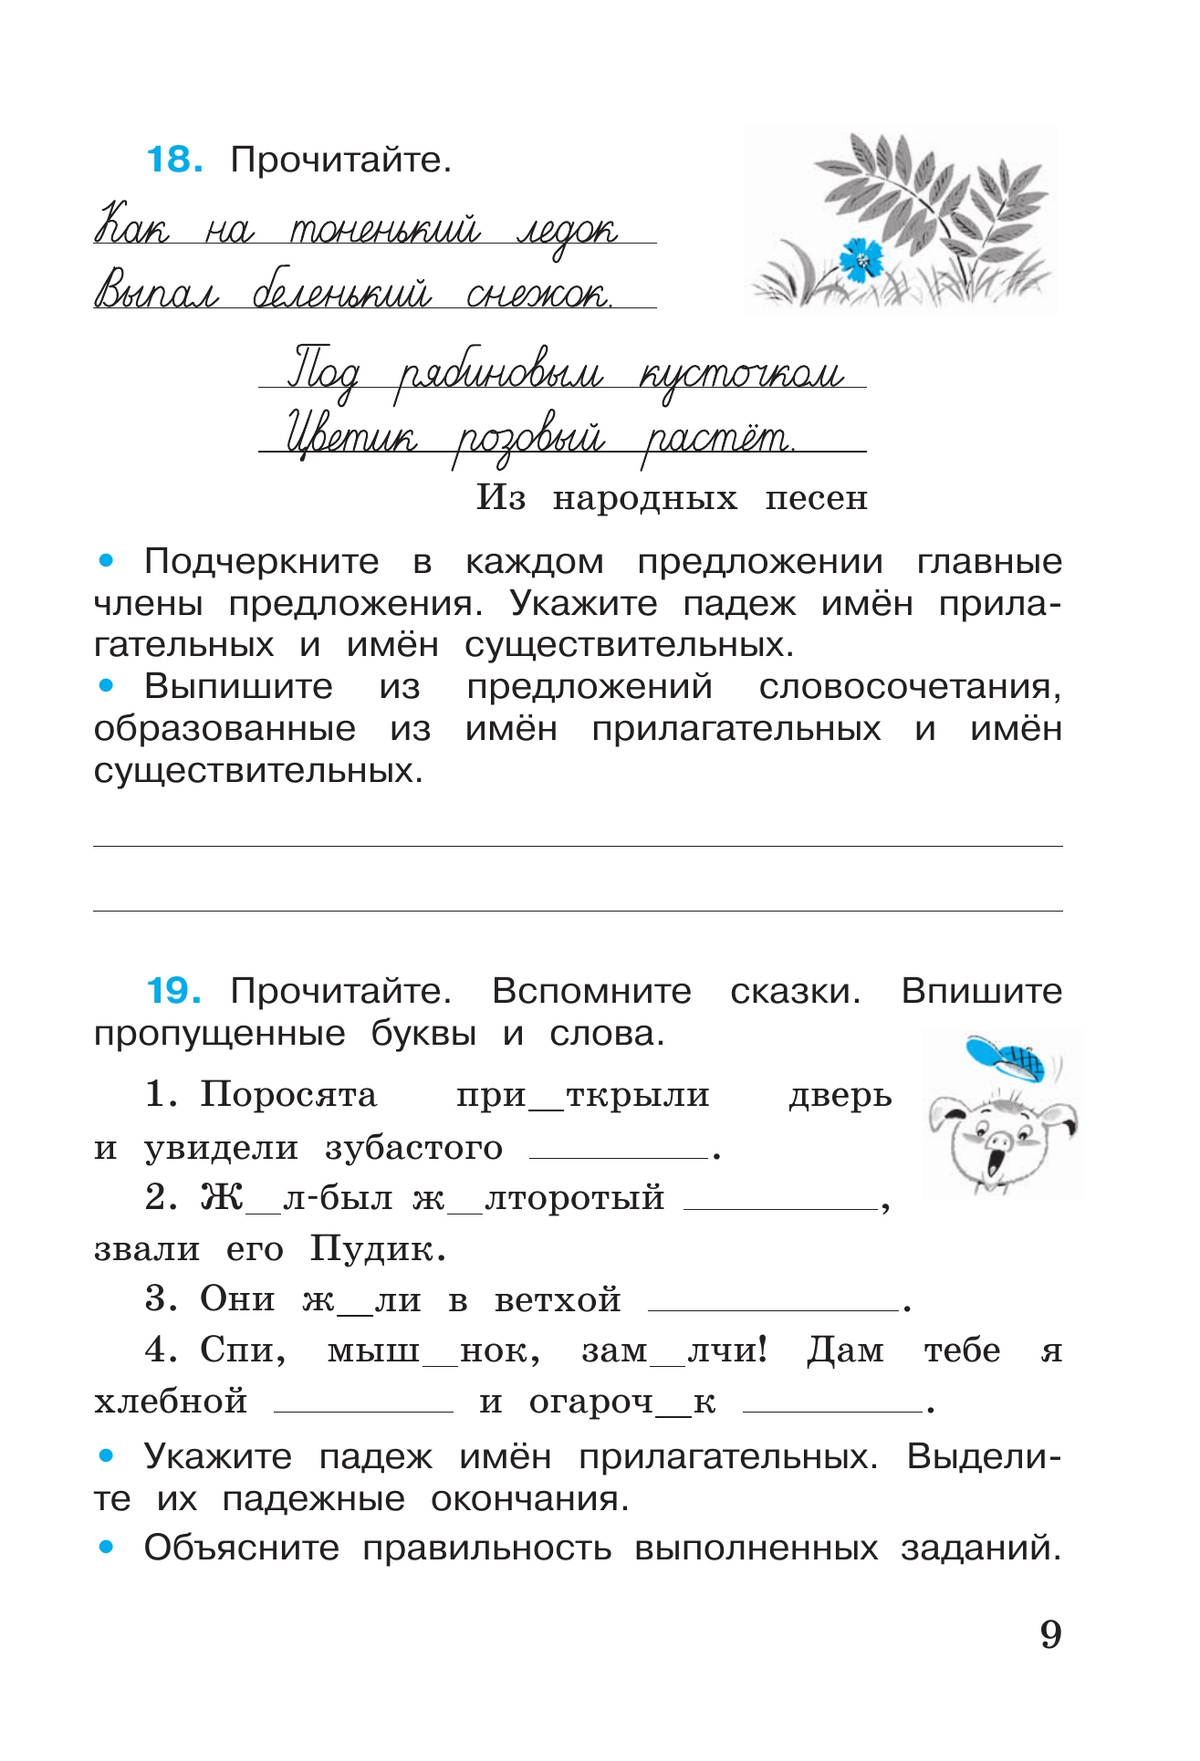 Русский язык. Рабочая тетрадь. 4 класс. В 2-х ч. Ч. 2 11